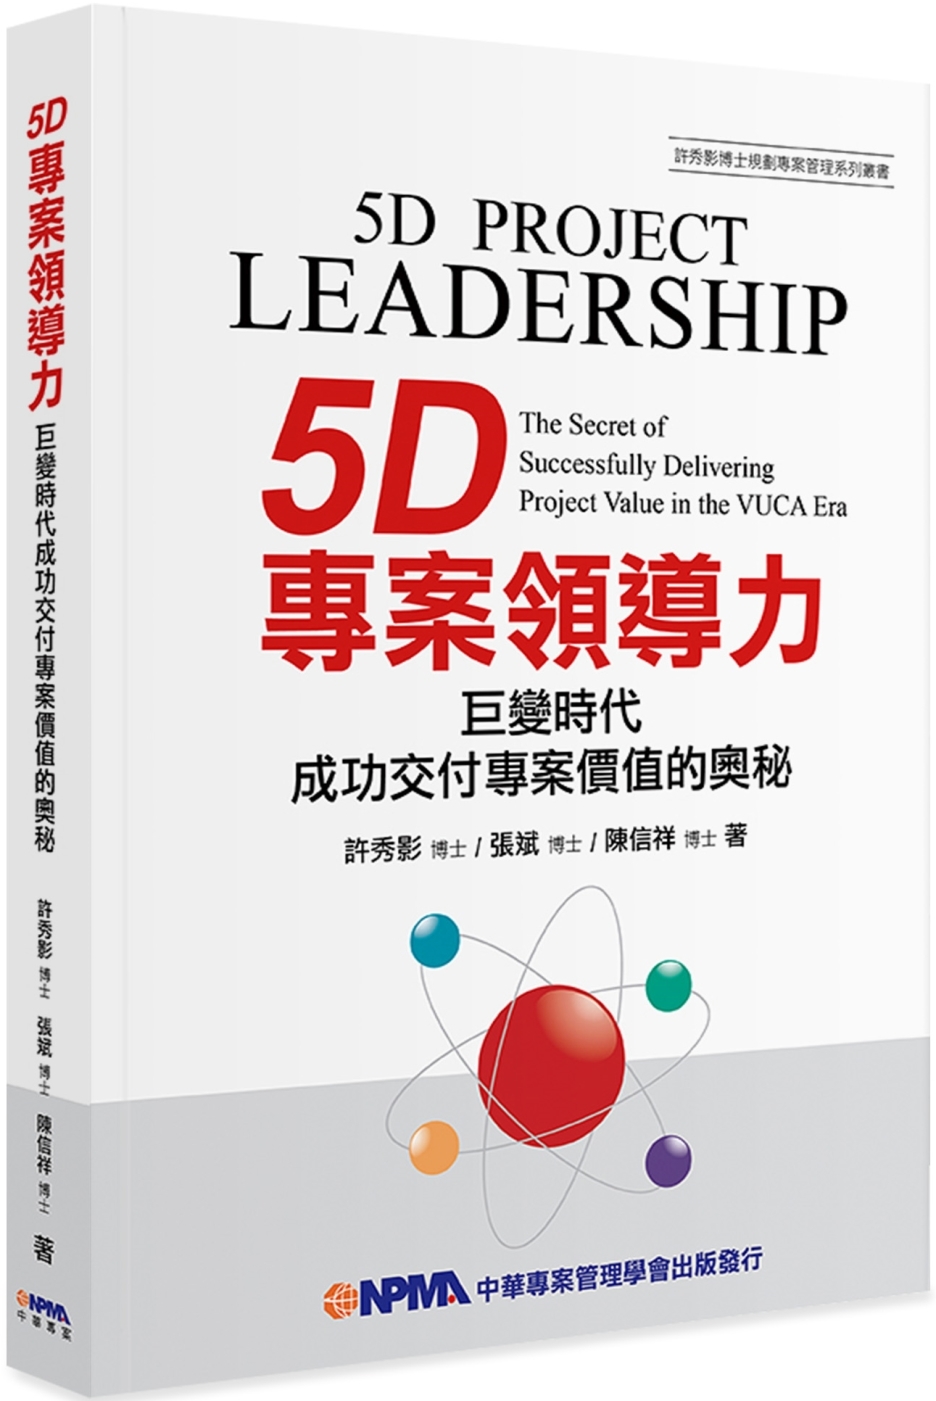 5D專案領導力：巨變時代成功交付專案價值的奧秘